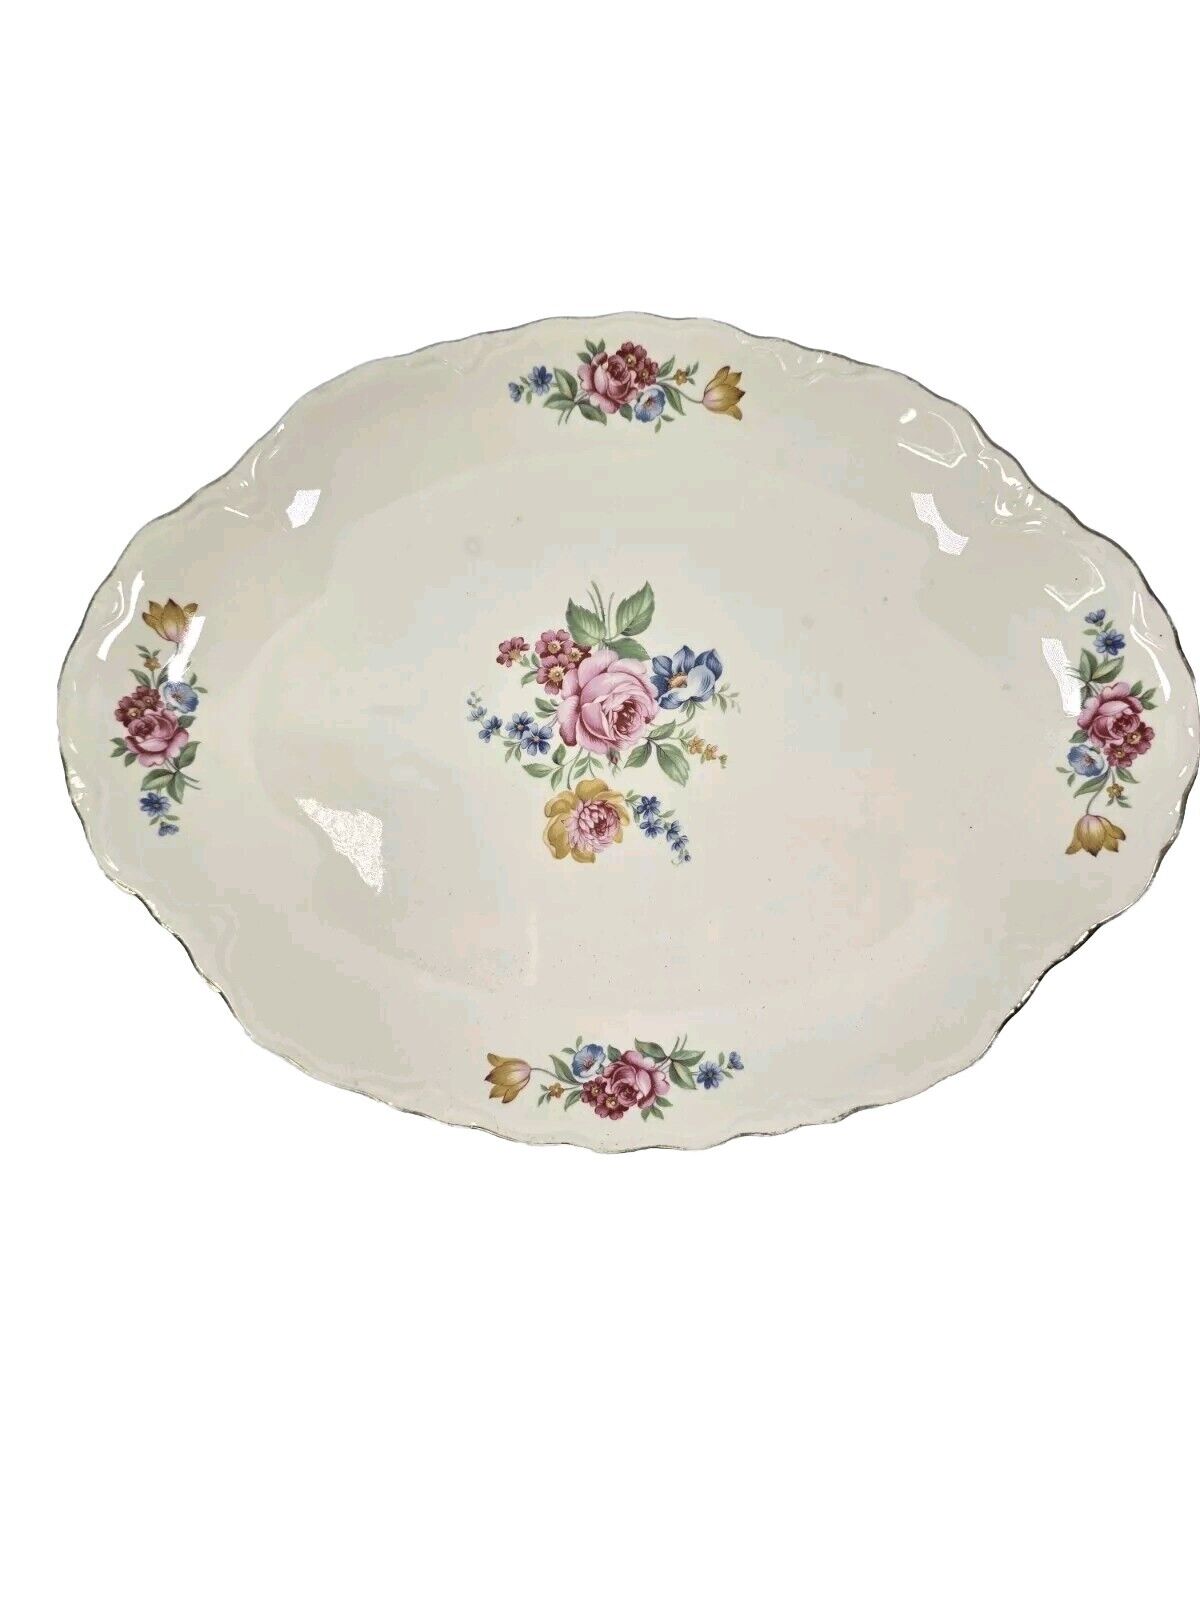 Vtg 1930’s Ironstone Floral Trky Platter By Scio Pottery Hazel Pattern 12x9x7/8